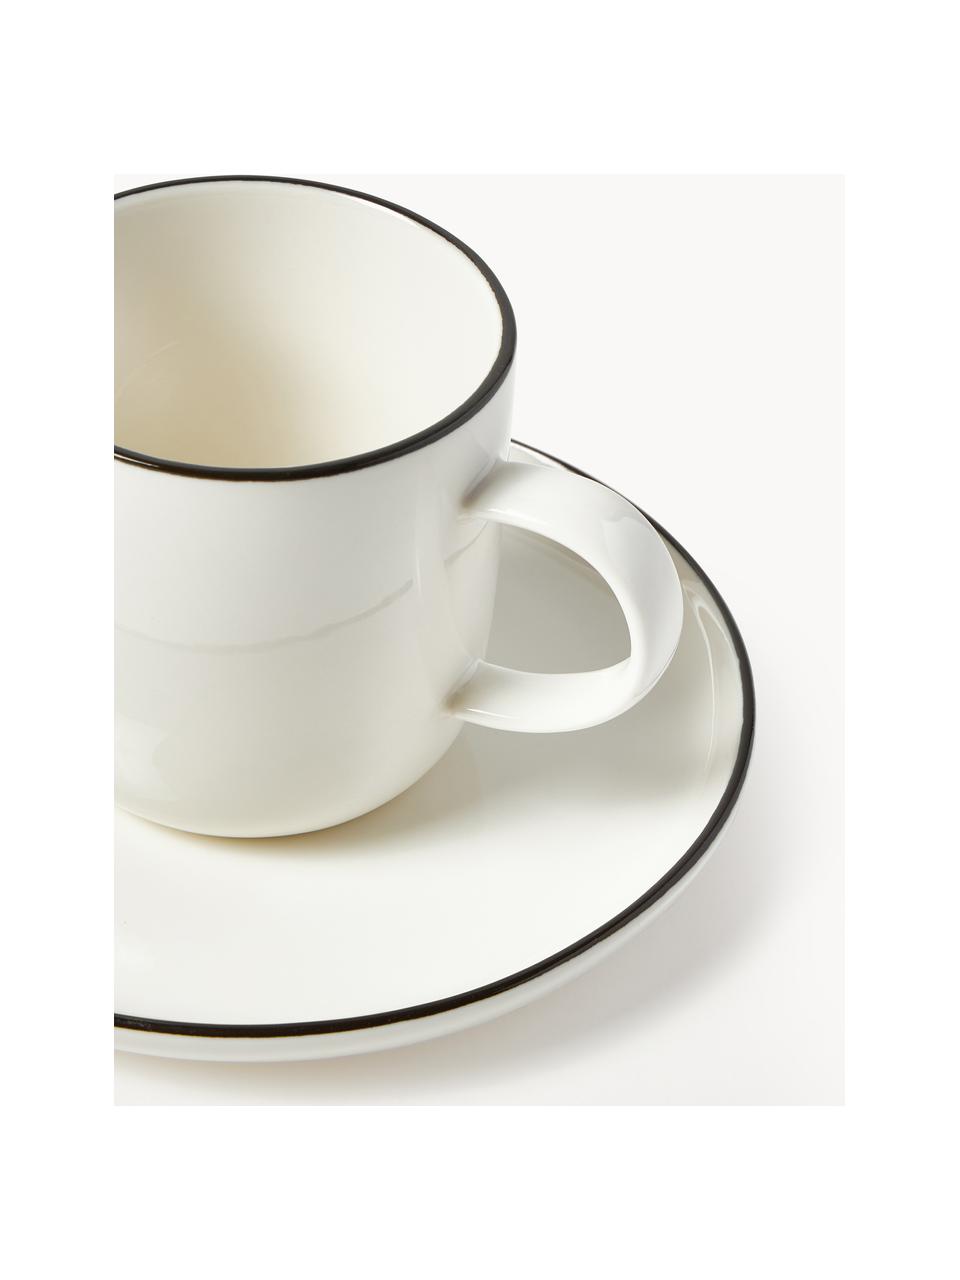 Porcelánové kávové šálky s podšálkami Facile, 2 ks, Vysokokvalitný tvrdý porcelán (cca 50 % kaolín, 25 % kremeň a 25 % živec), Lomená biela s čiernym okrajom, Ø 8 x V 8 cm, 250 ml